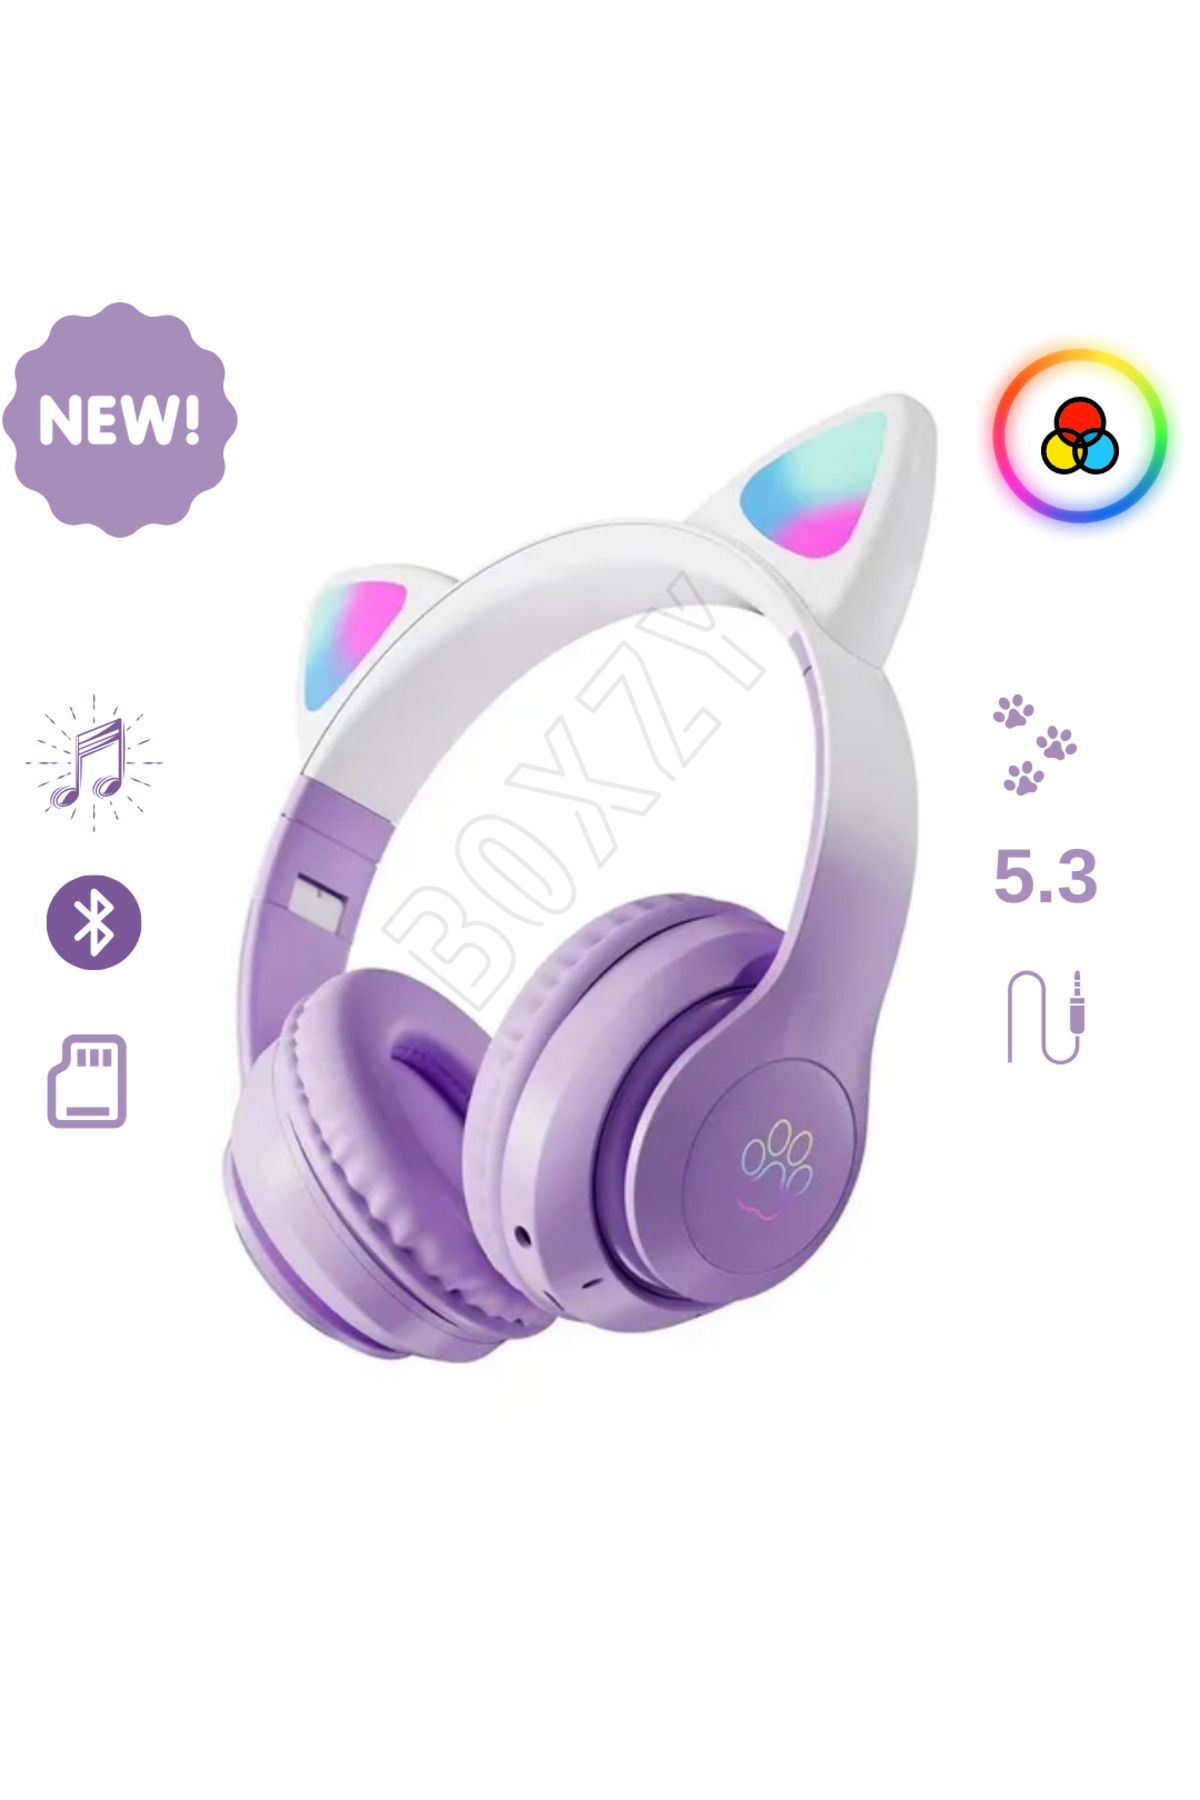 HEJARON Kedi Kulaklık Pro 5.3 Akıllı Rgb Led Detaylı Bluetooth Kablosuz Kulaklık Çocuk Oyuncu Yenİ